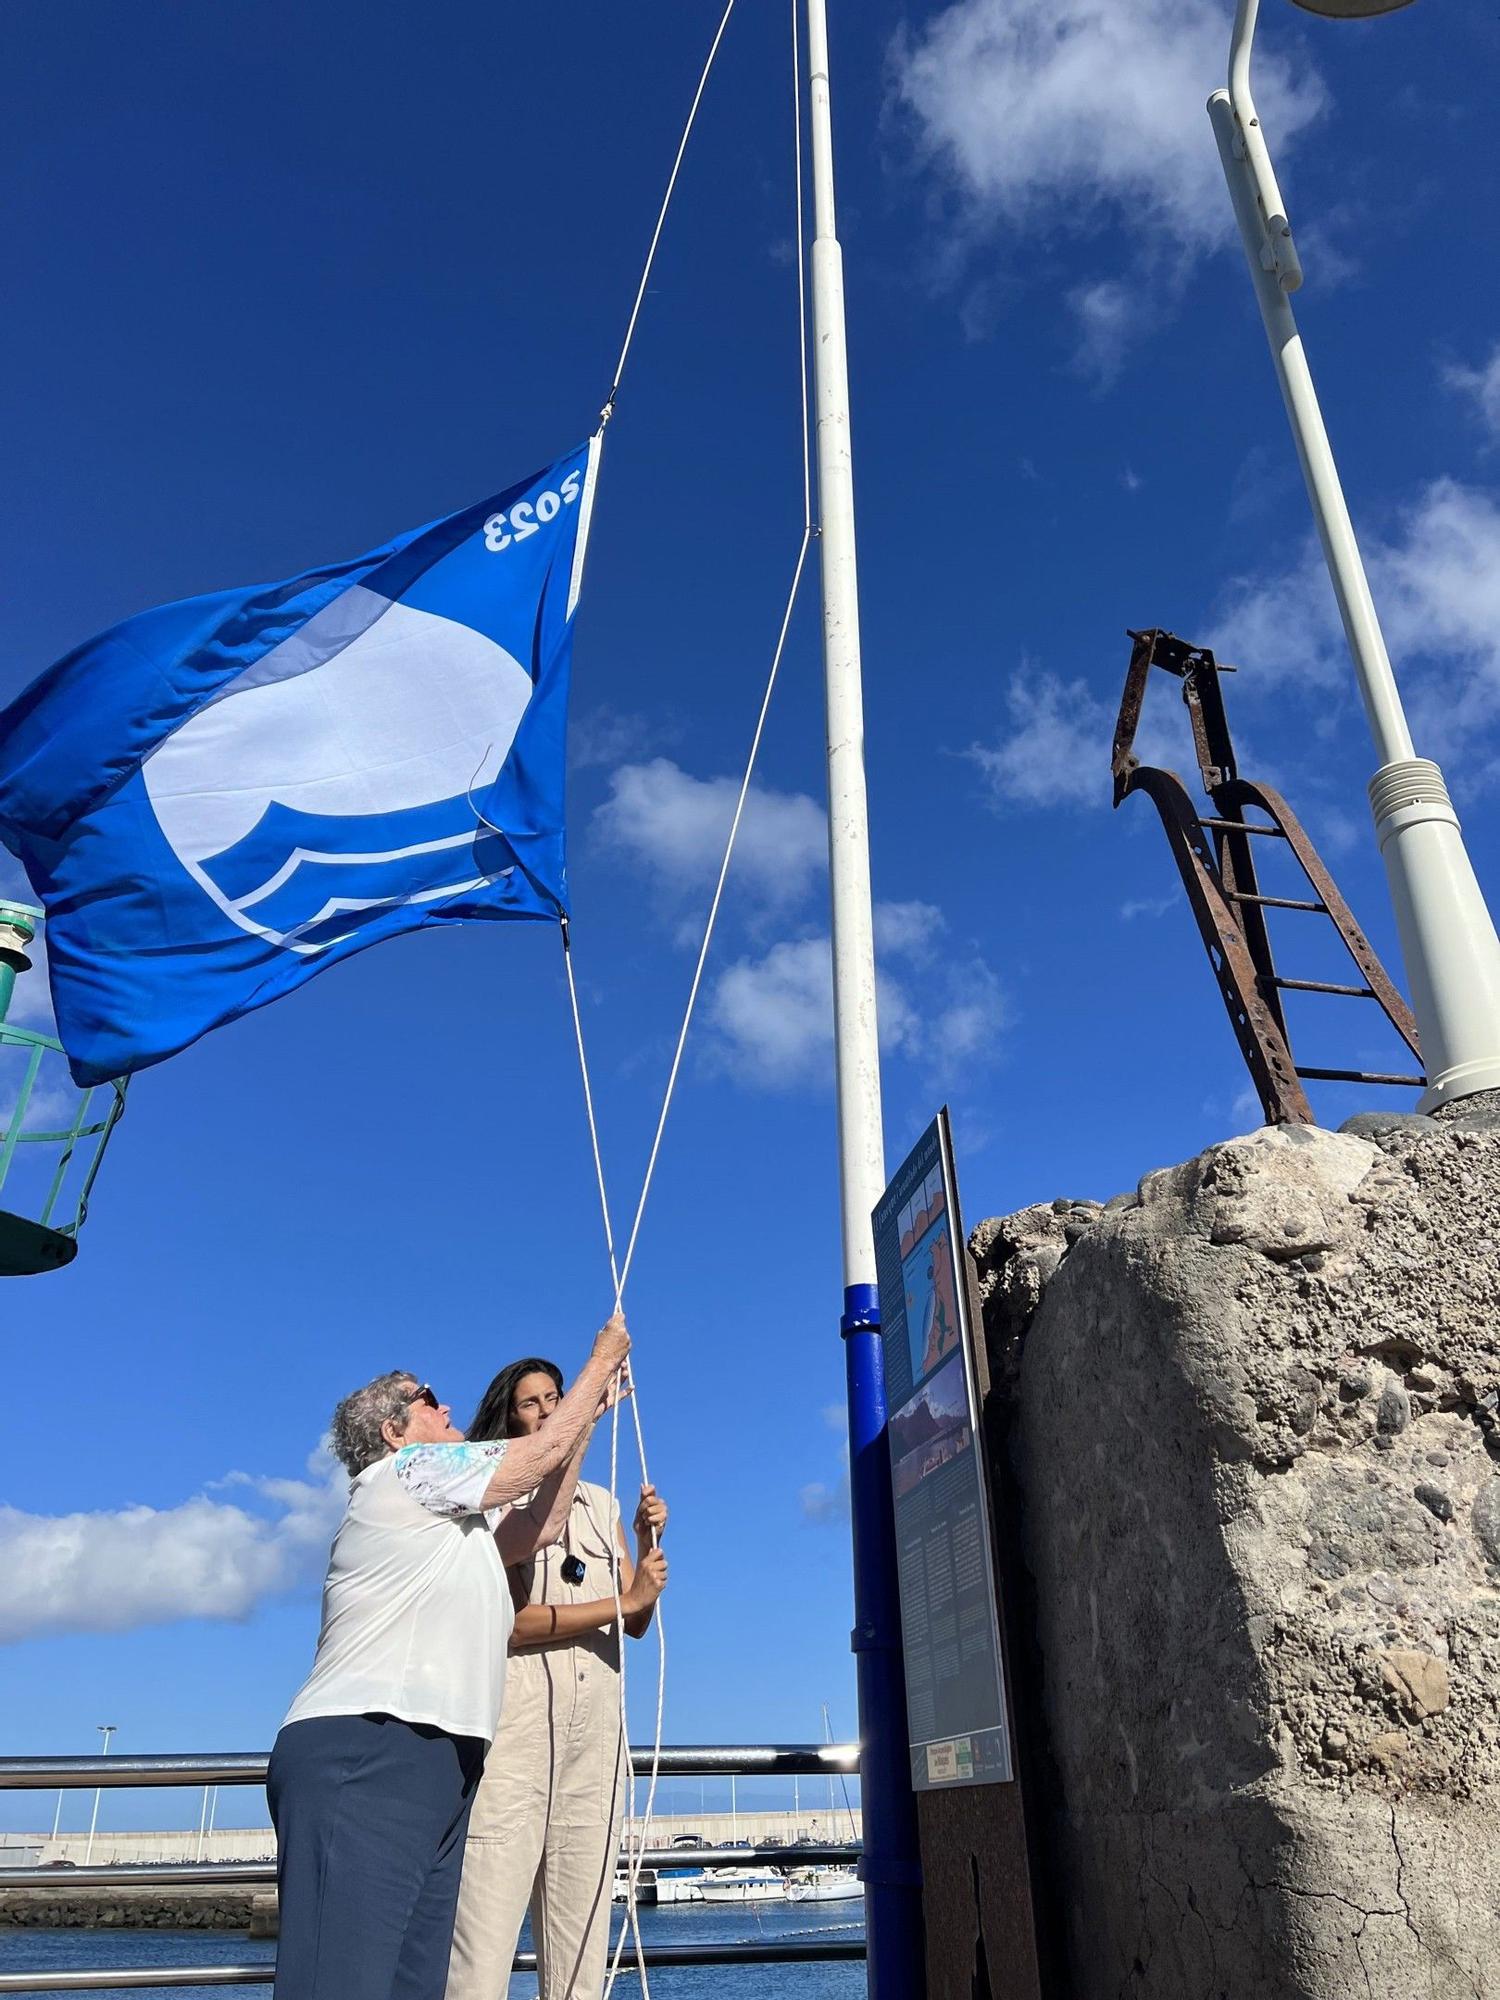 La Bandera Azul ya ondea en la playa de Las Nieves de Agaete. Nieves Ramos Santana y la concejala de Playas, Sara Perdomo